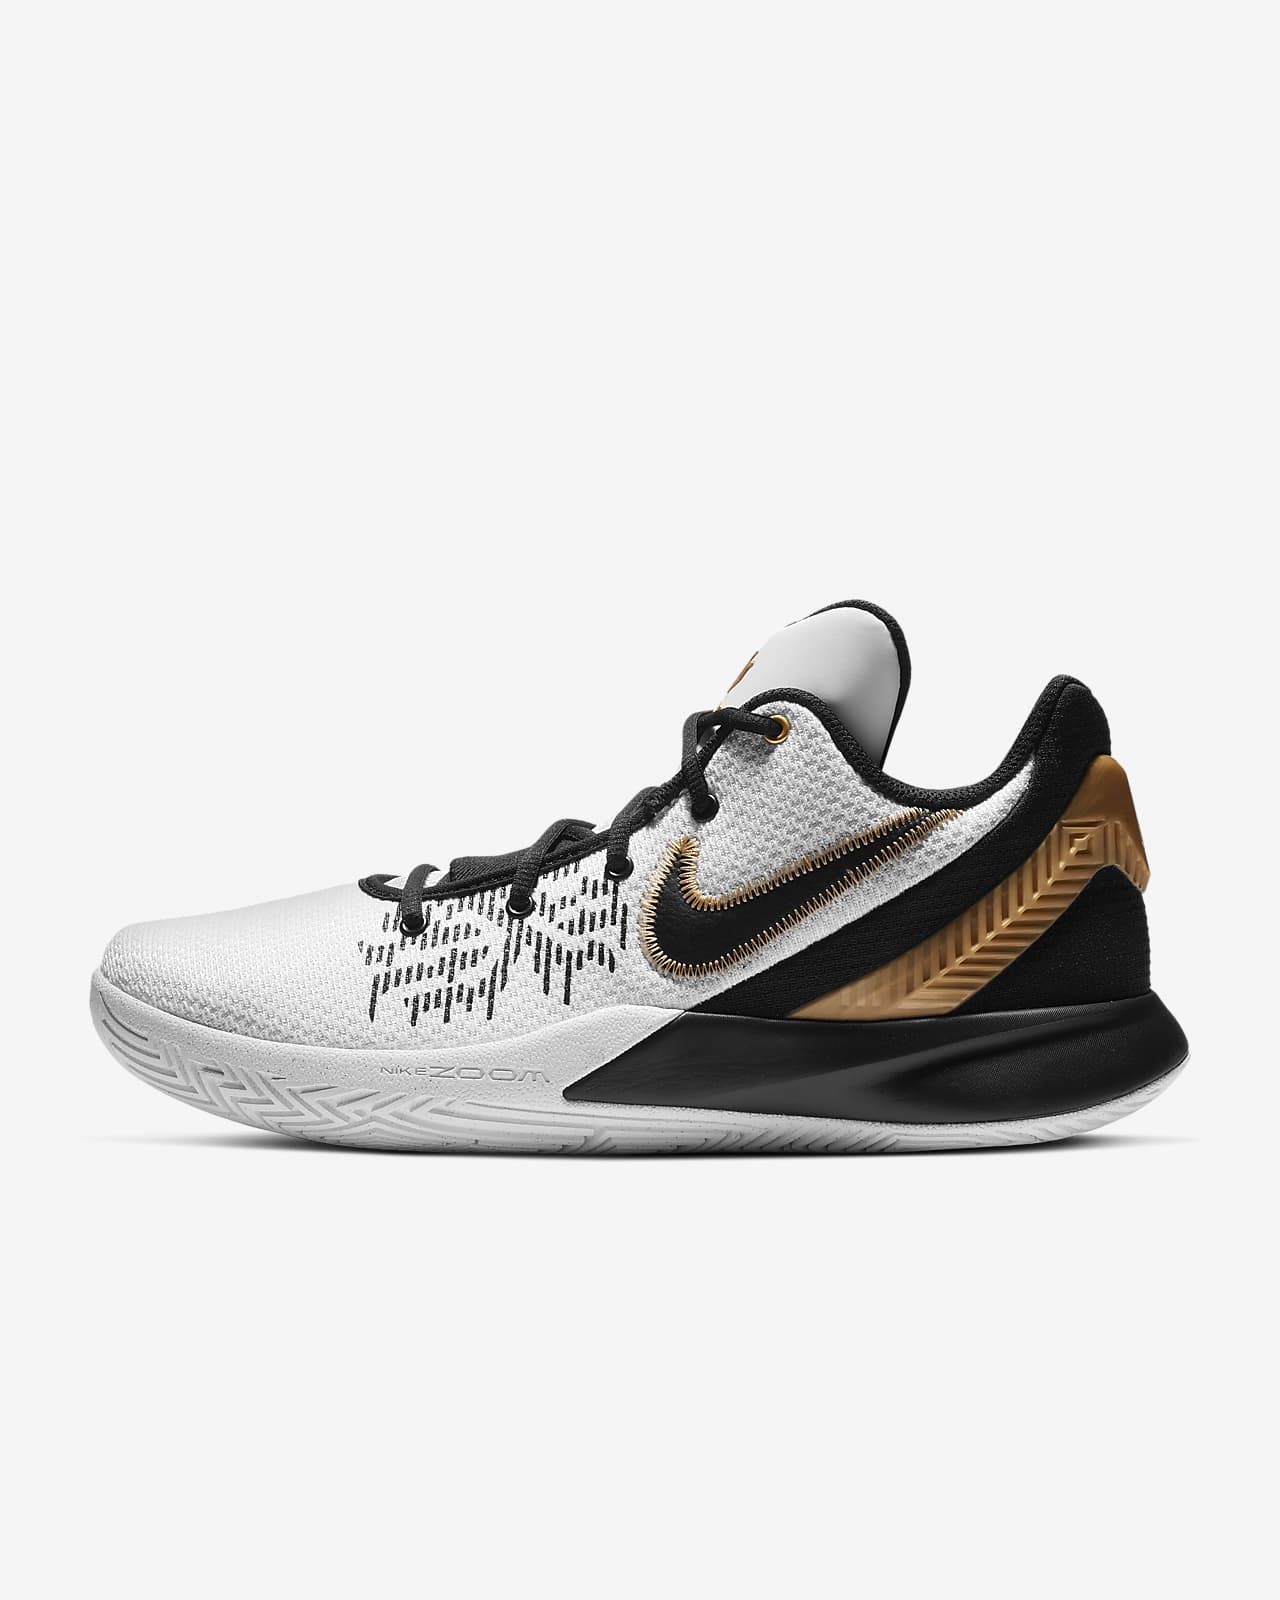 Kyrie Flytrap II 籃球鞋。Nike TW